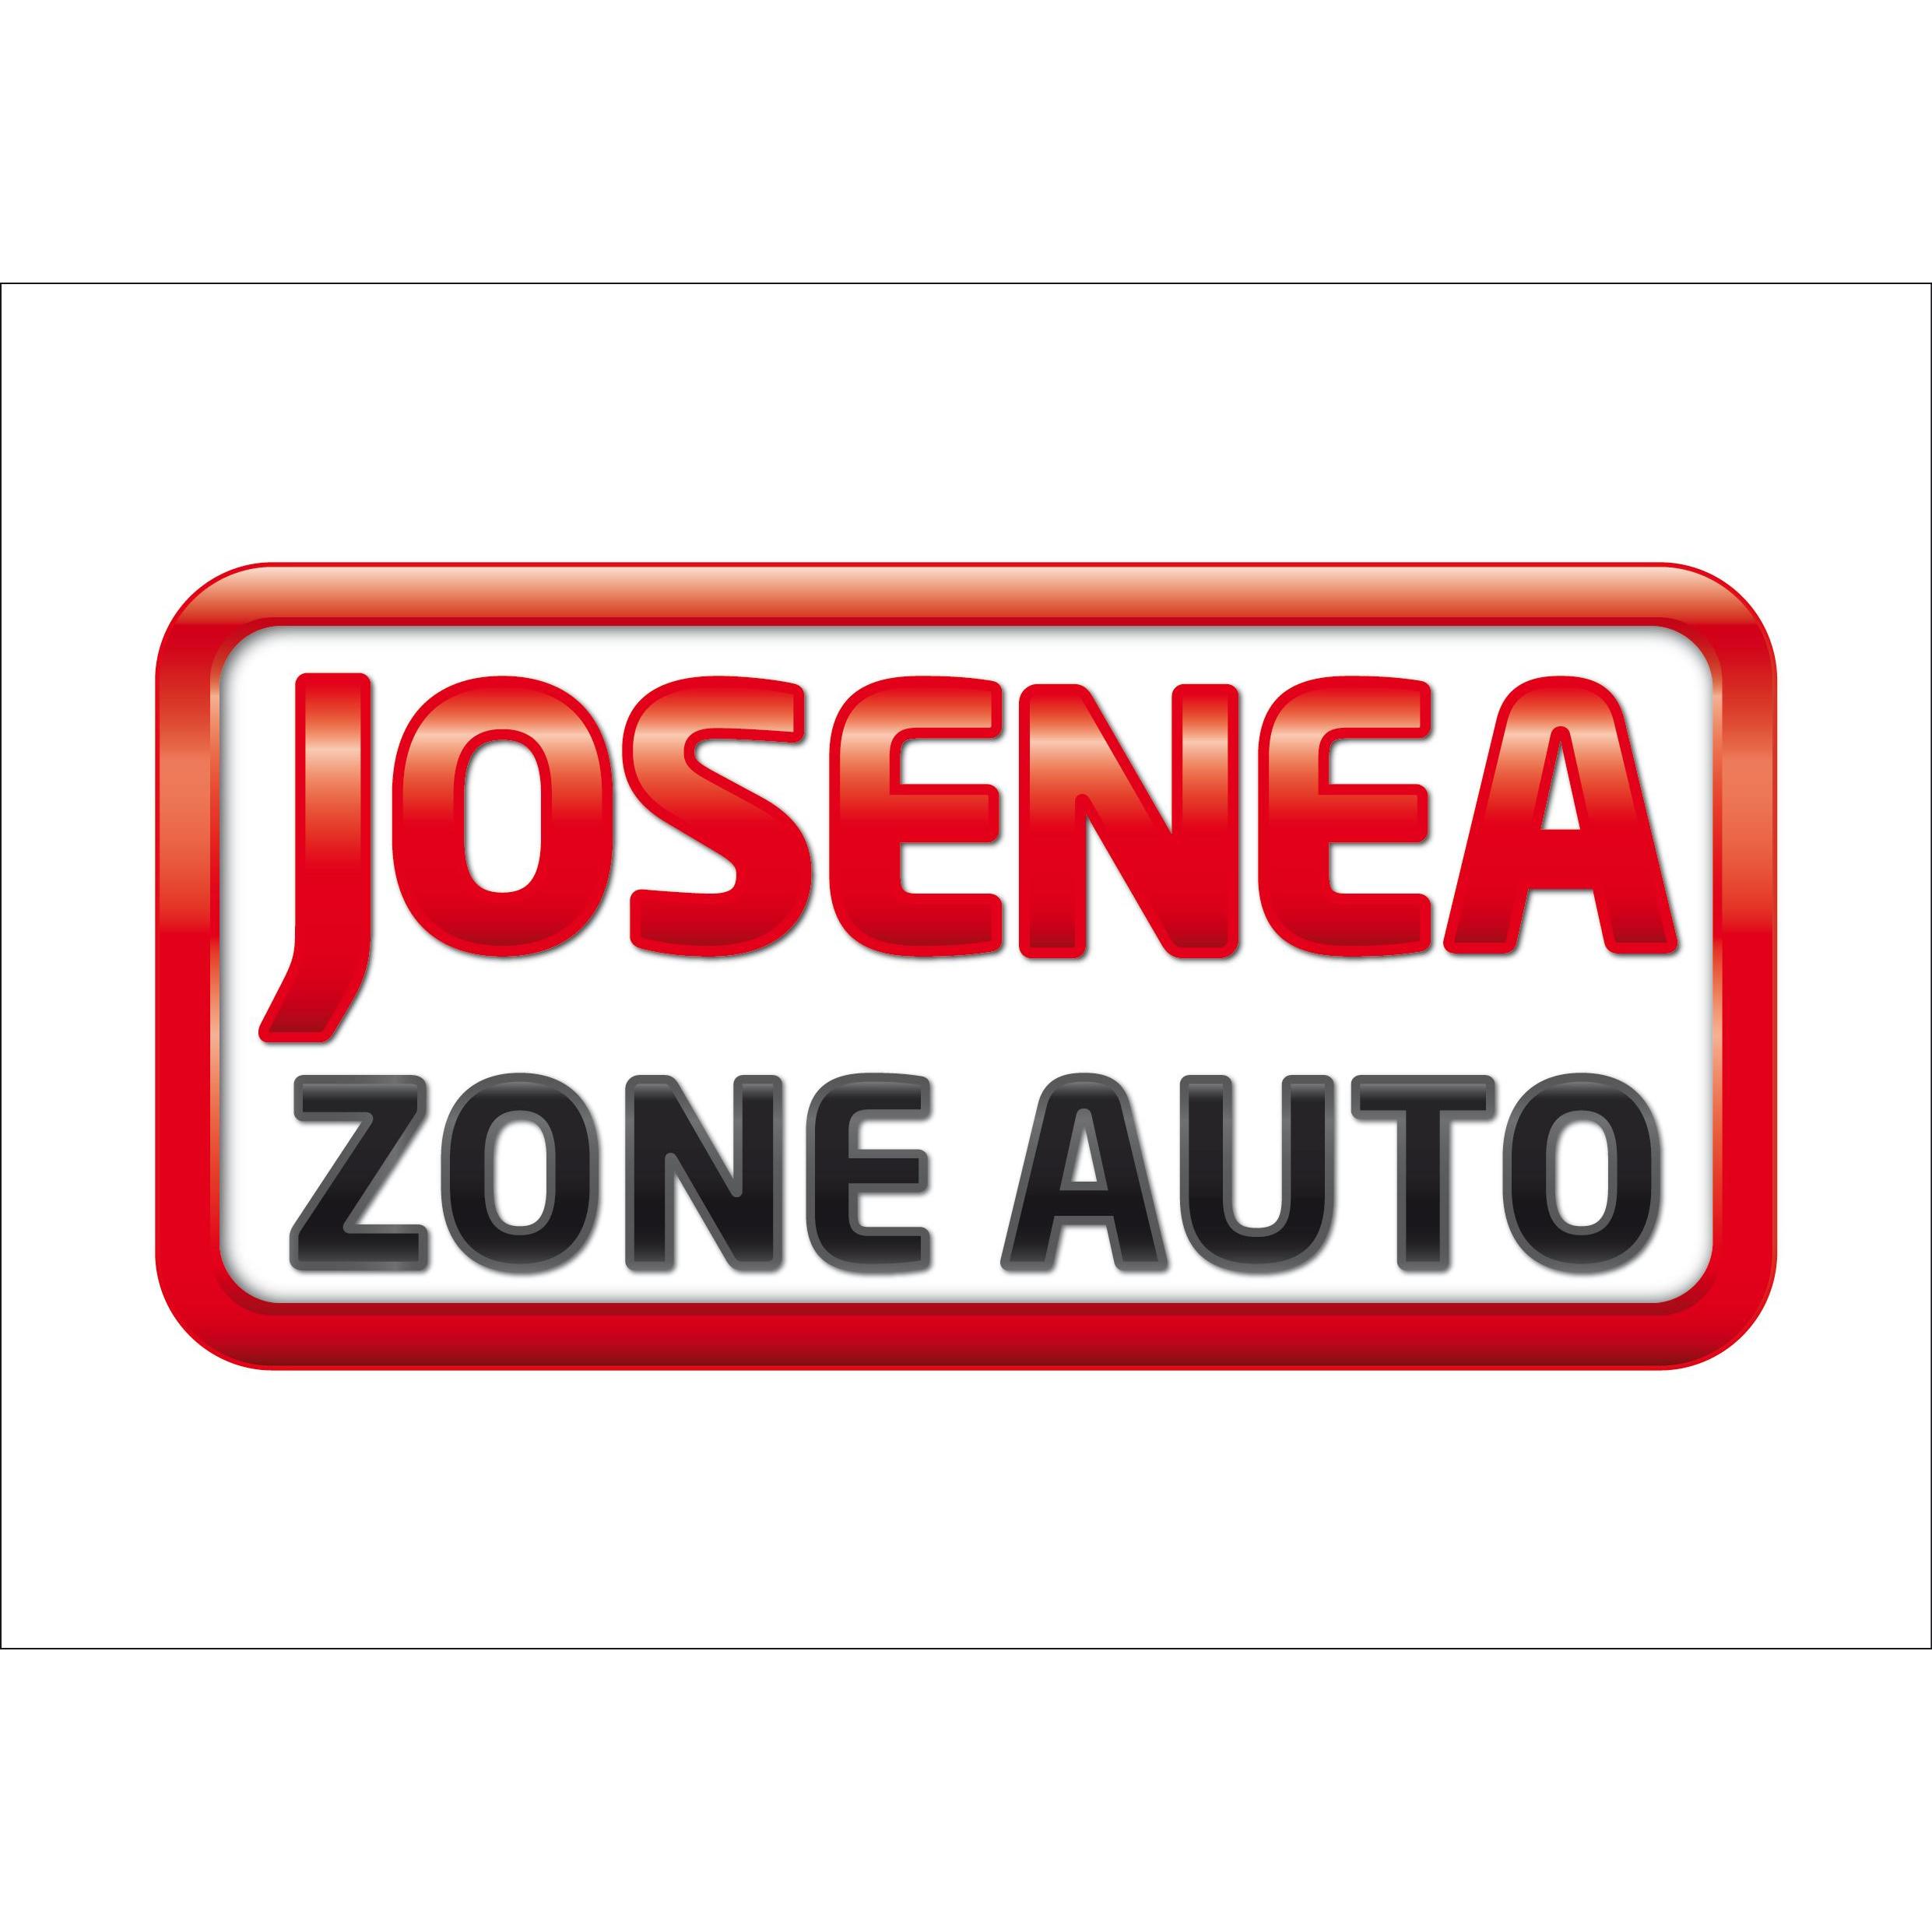 Estacion De Servicio Zona Auto Oronoz-Mugaire Josenea SL Logo